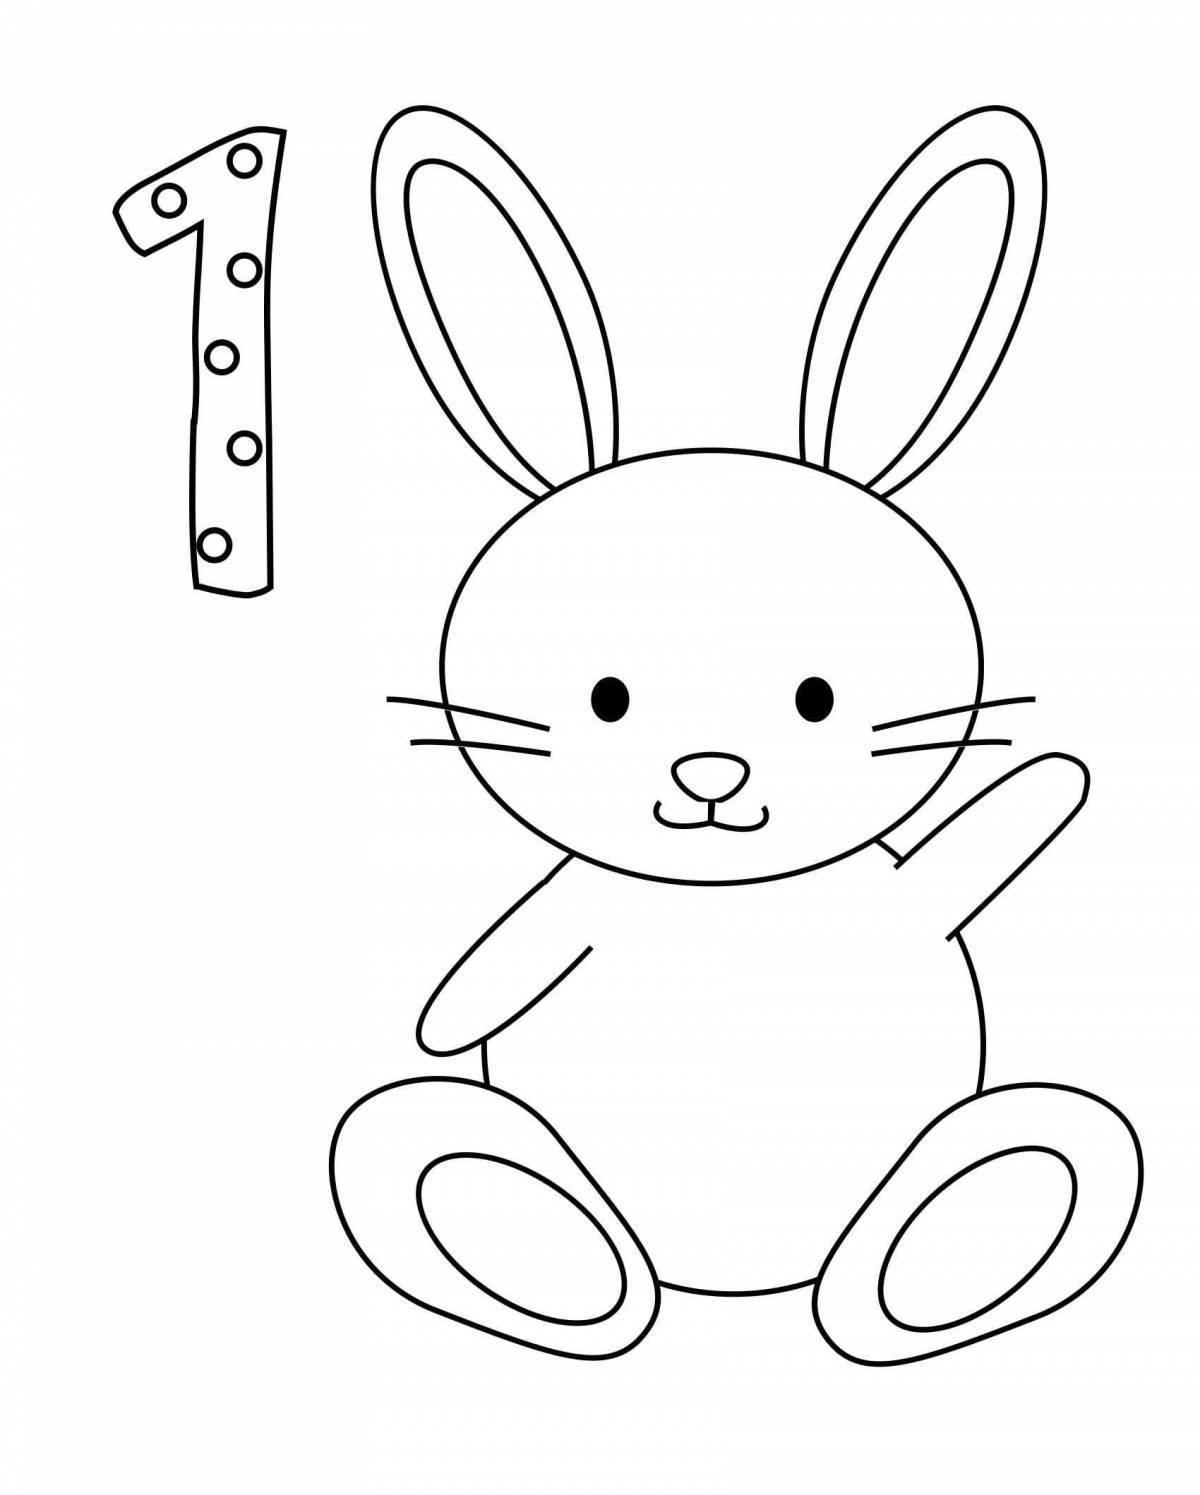 Веселая раскраска с изображением кролика